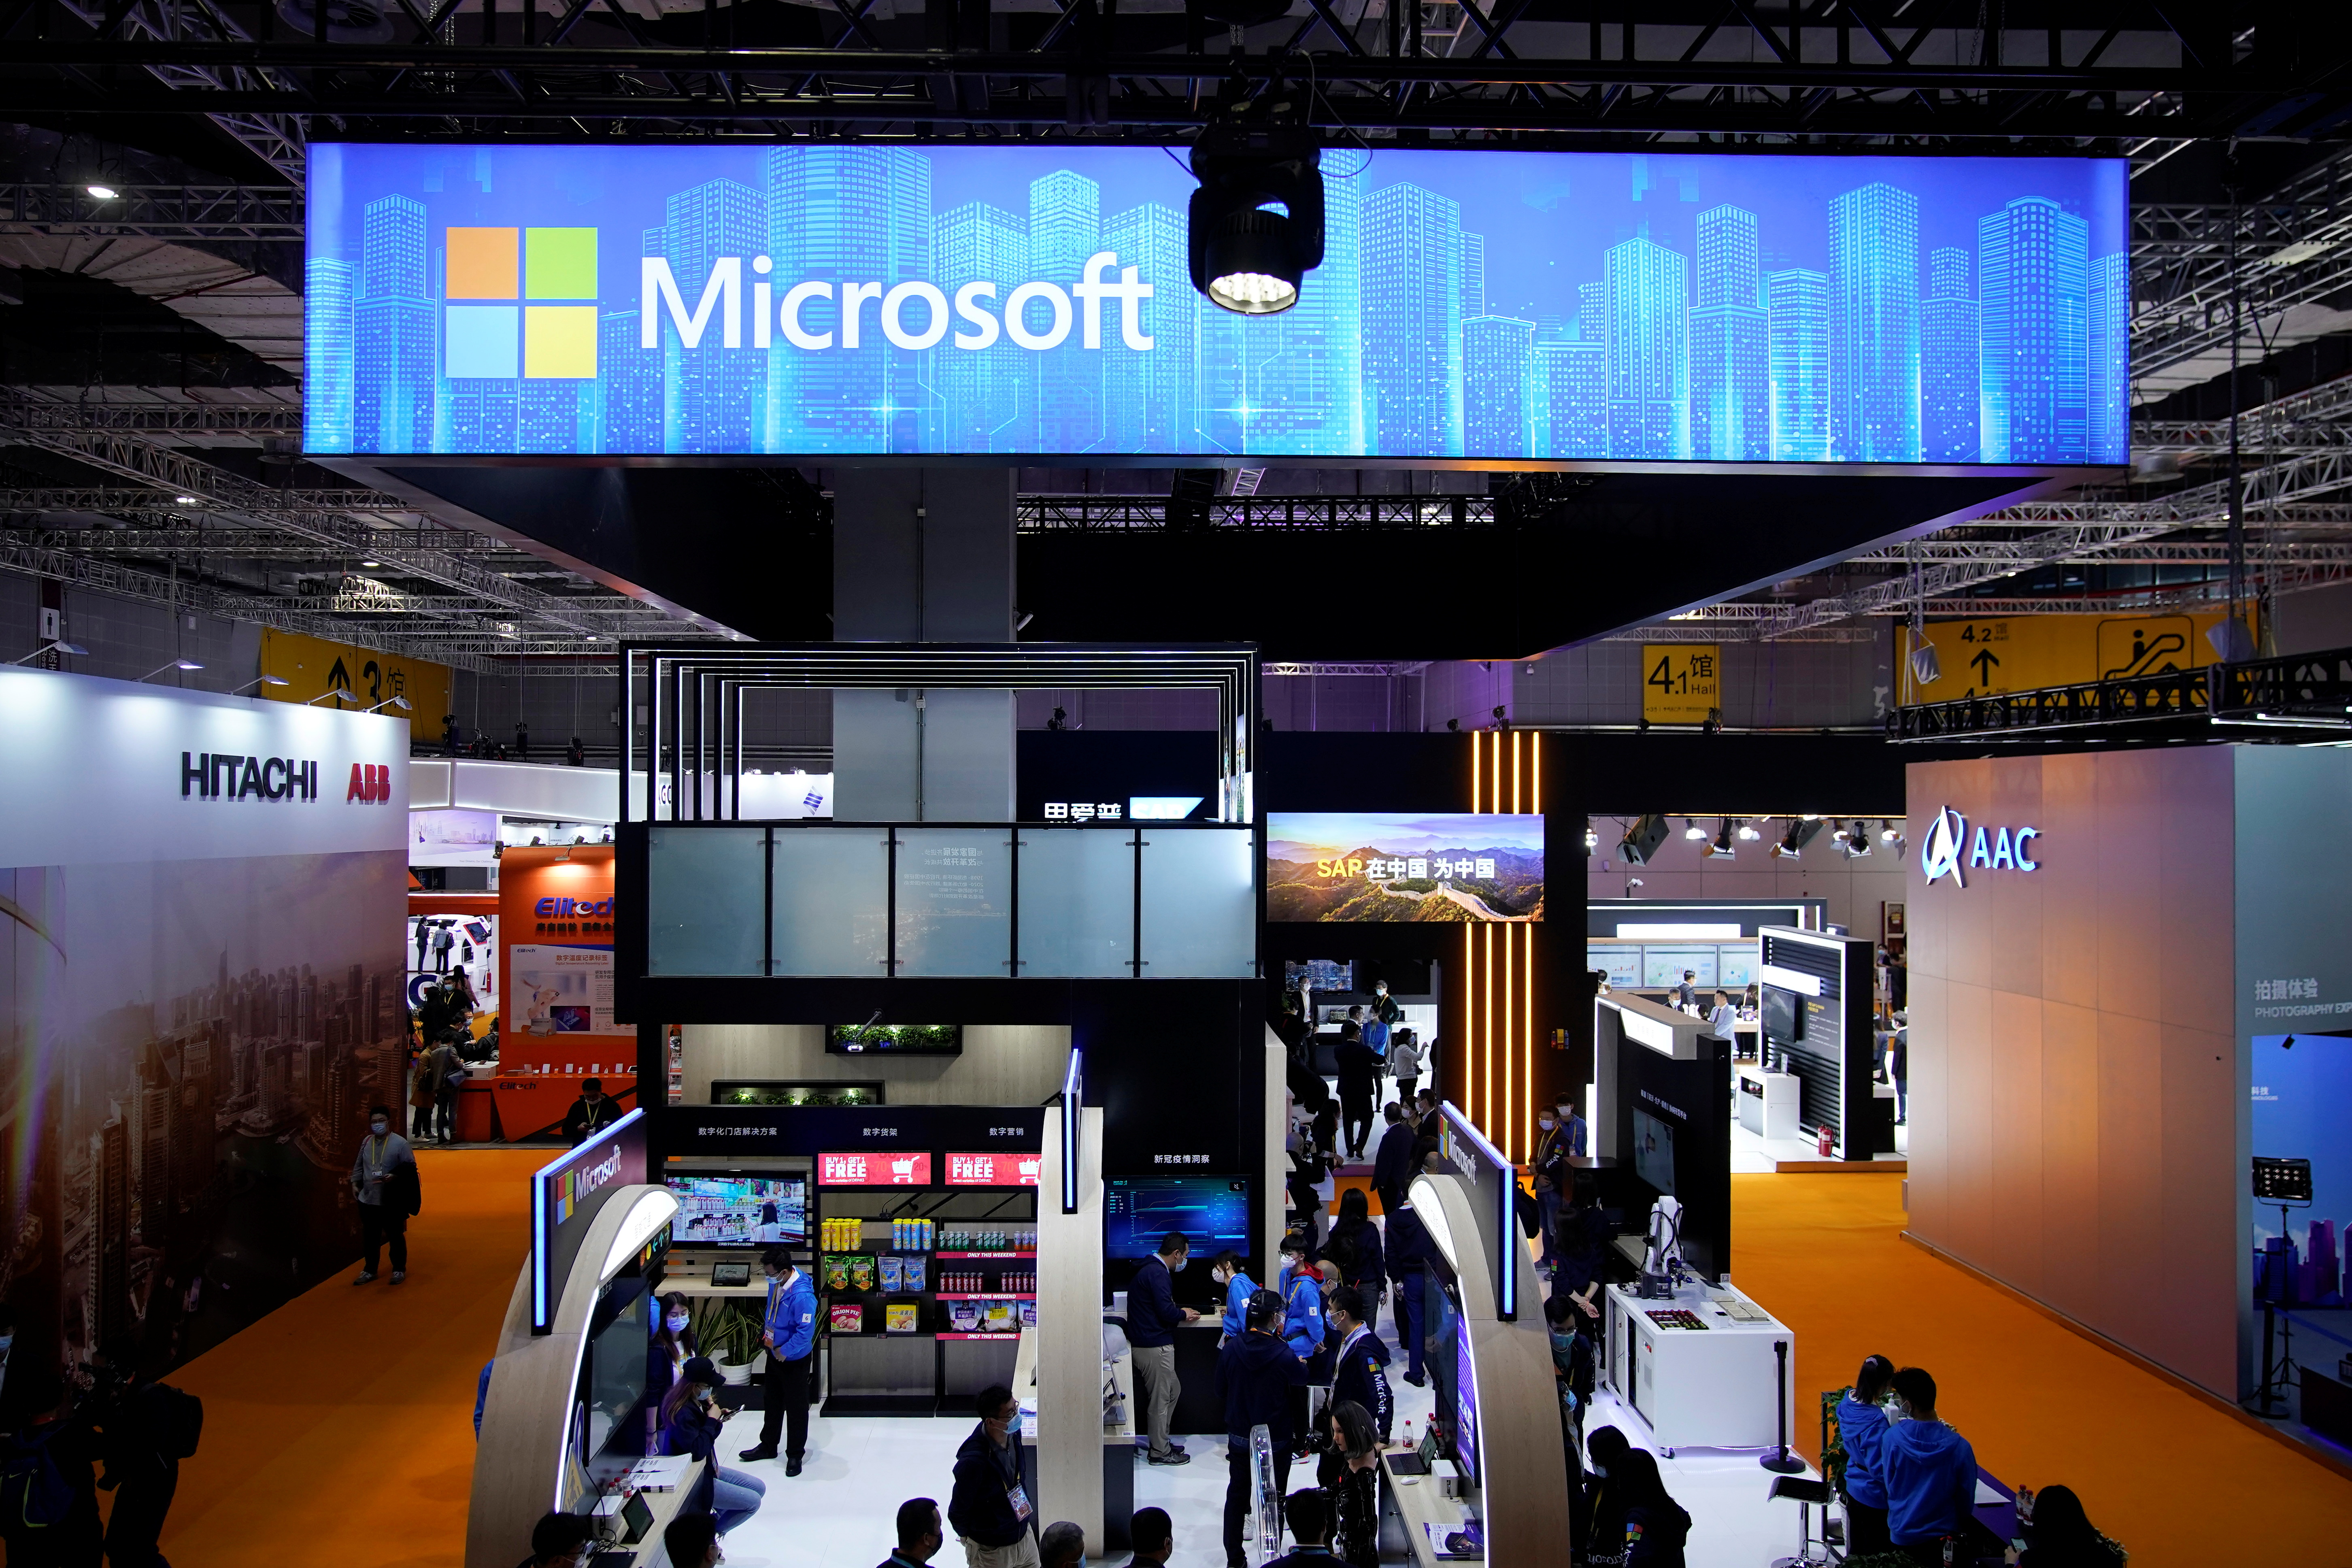 Una señal de Microsoft en una feria de tecnología en Shanghai, China. REUTERS/Aly Song